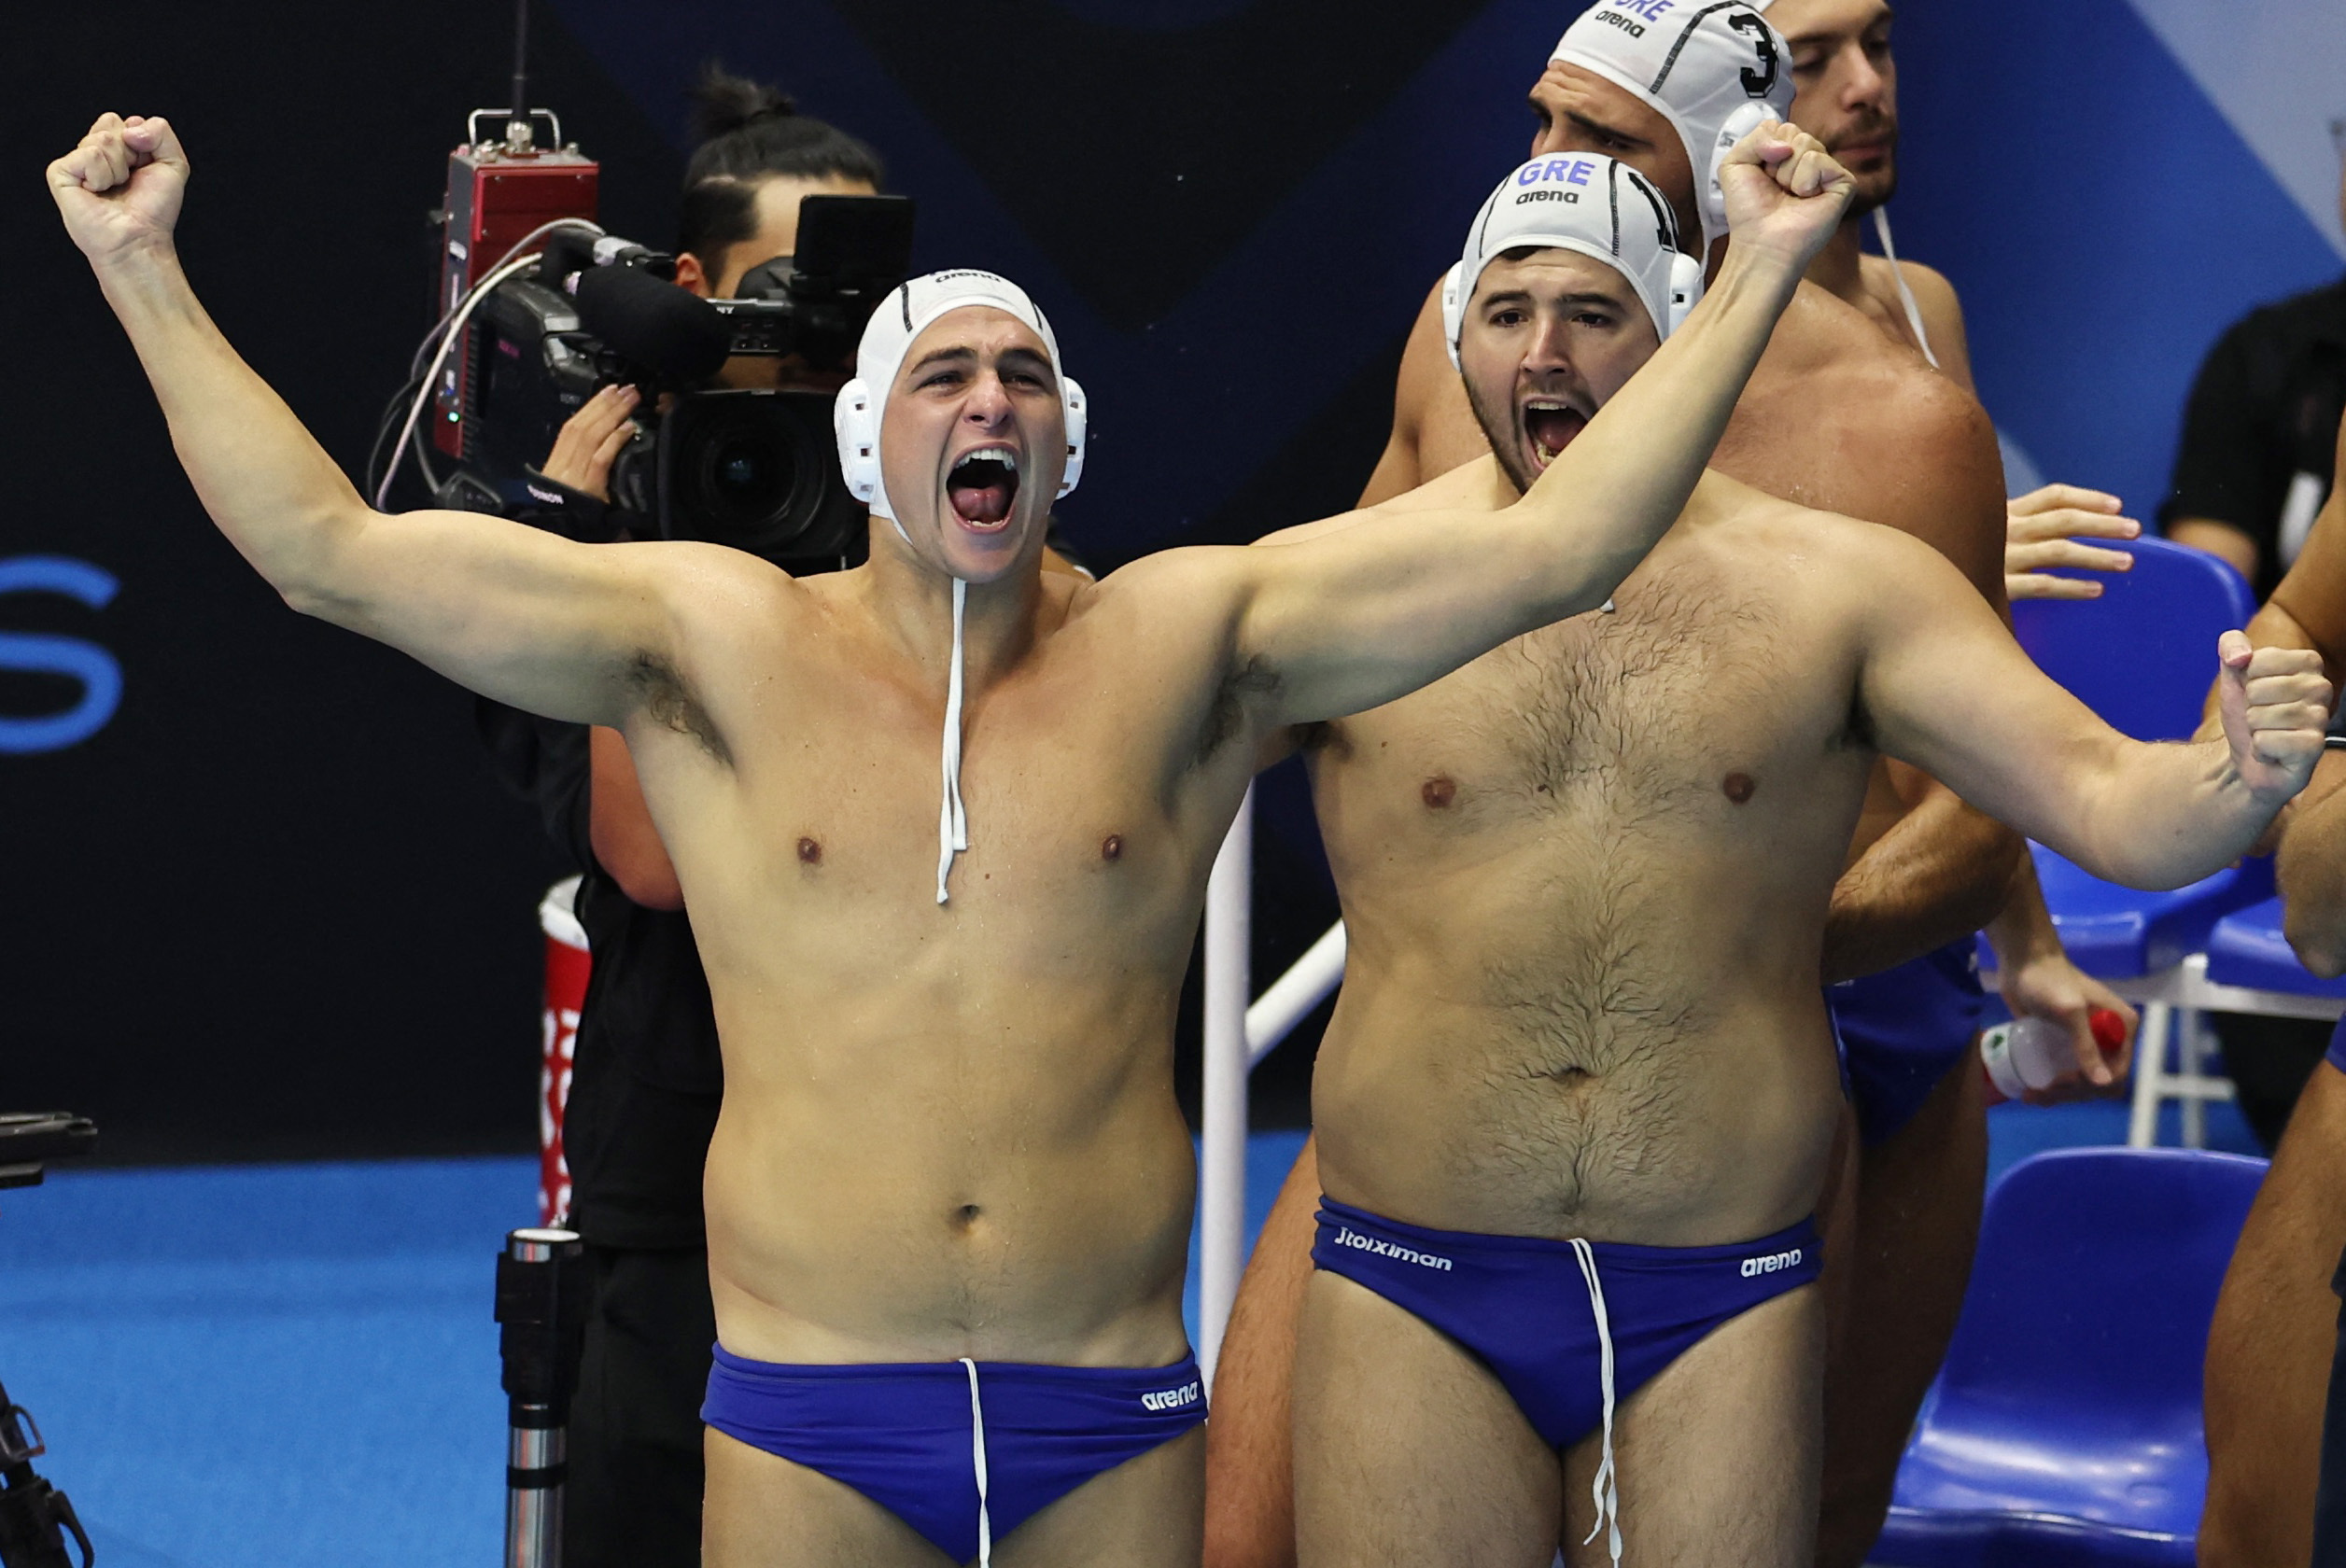 Εθνική ομάδα πόλο ανδρών: To εγχειρίδιο των πολεμιστών της πισίνας